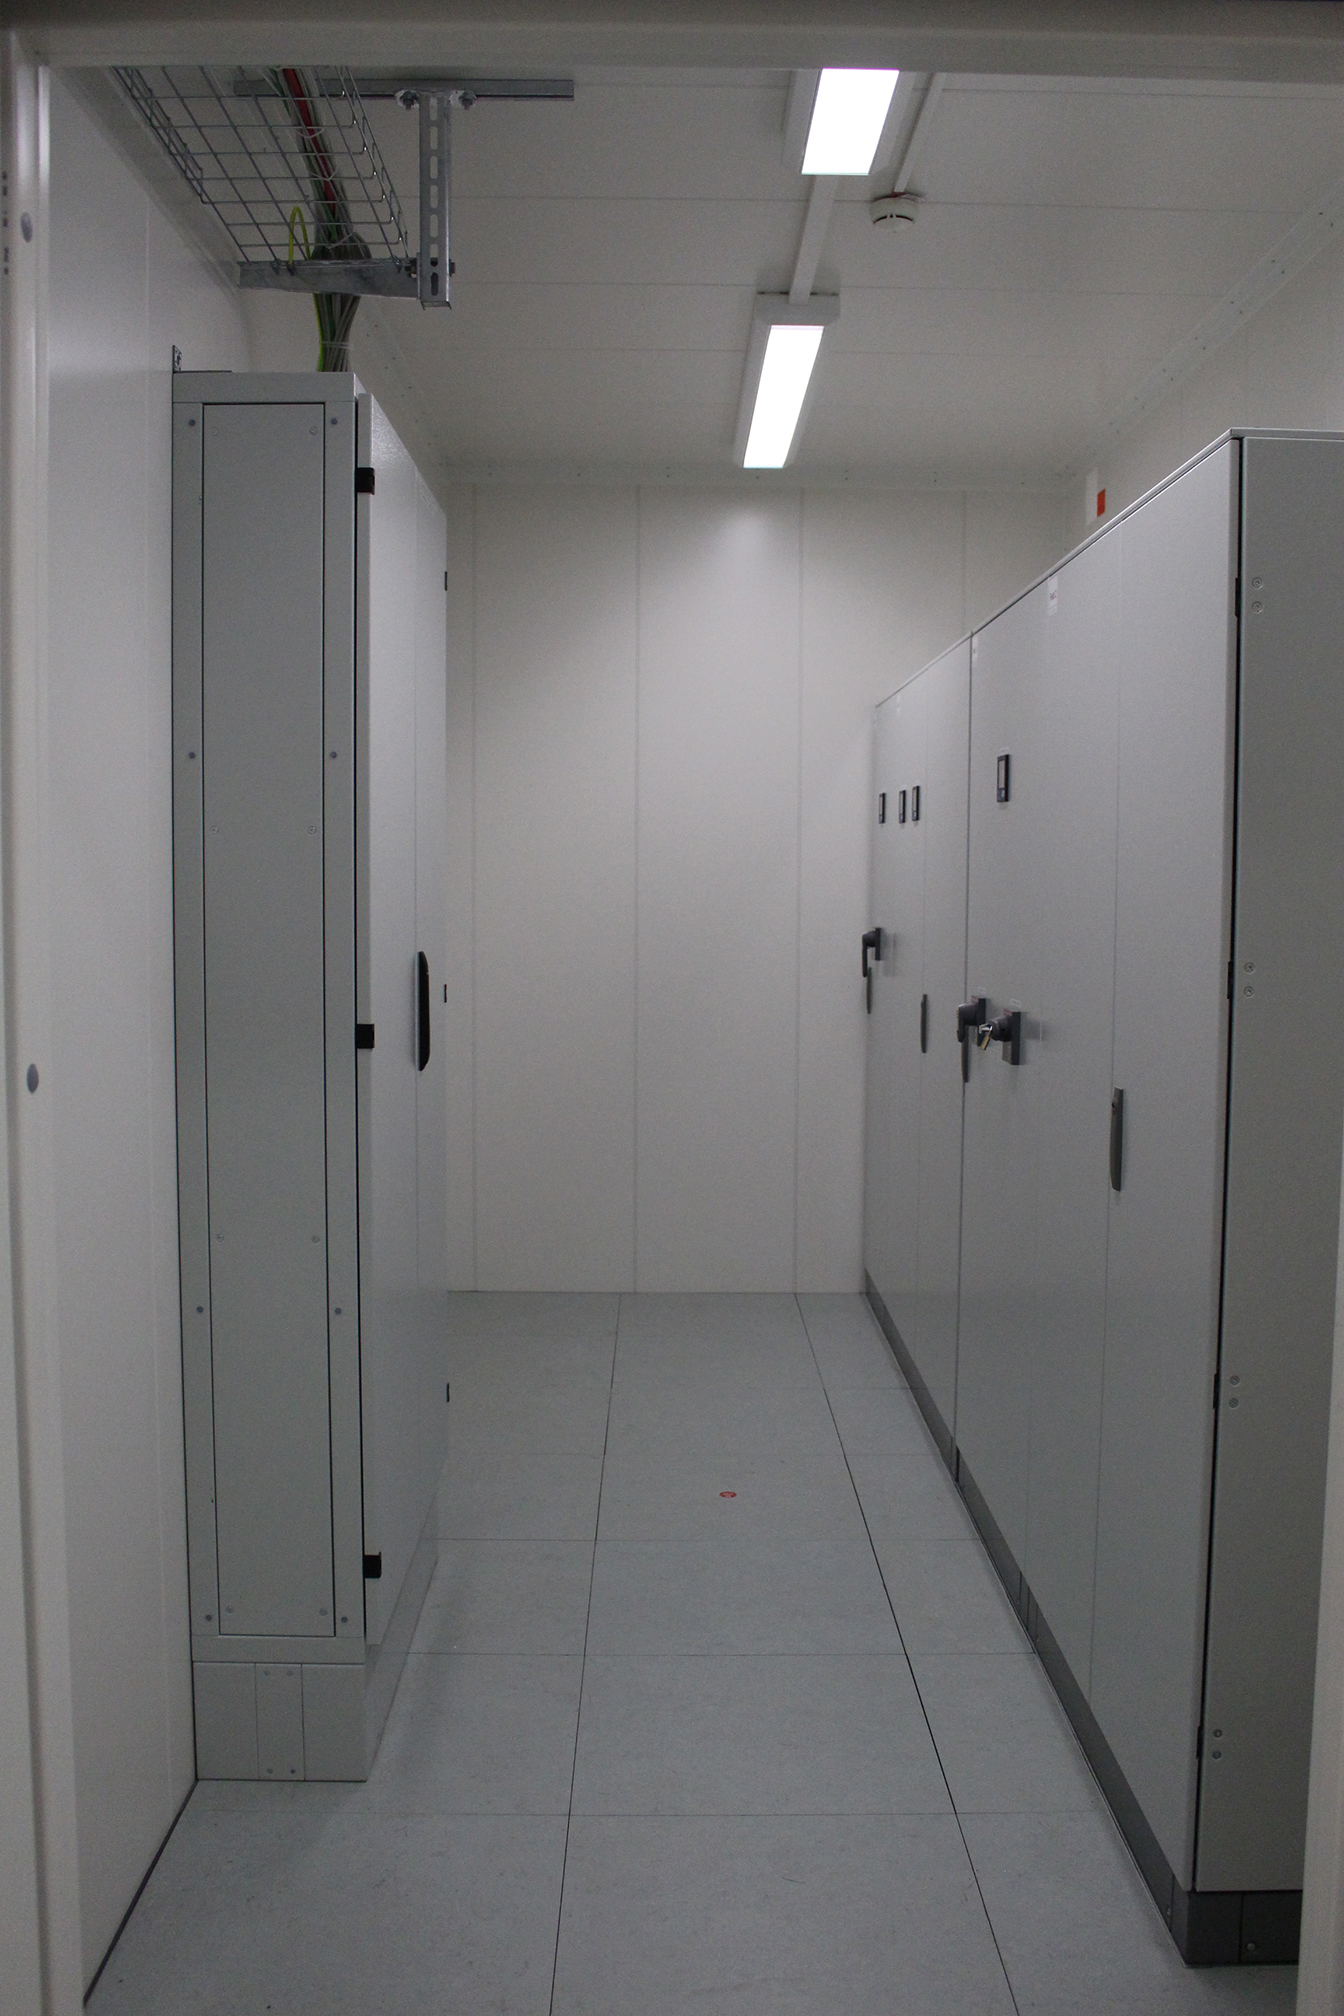 Raum mit Serverschränken grau in links und rechts